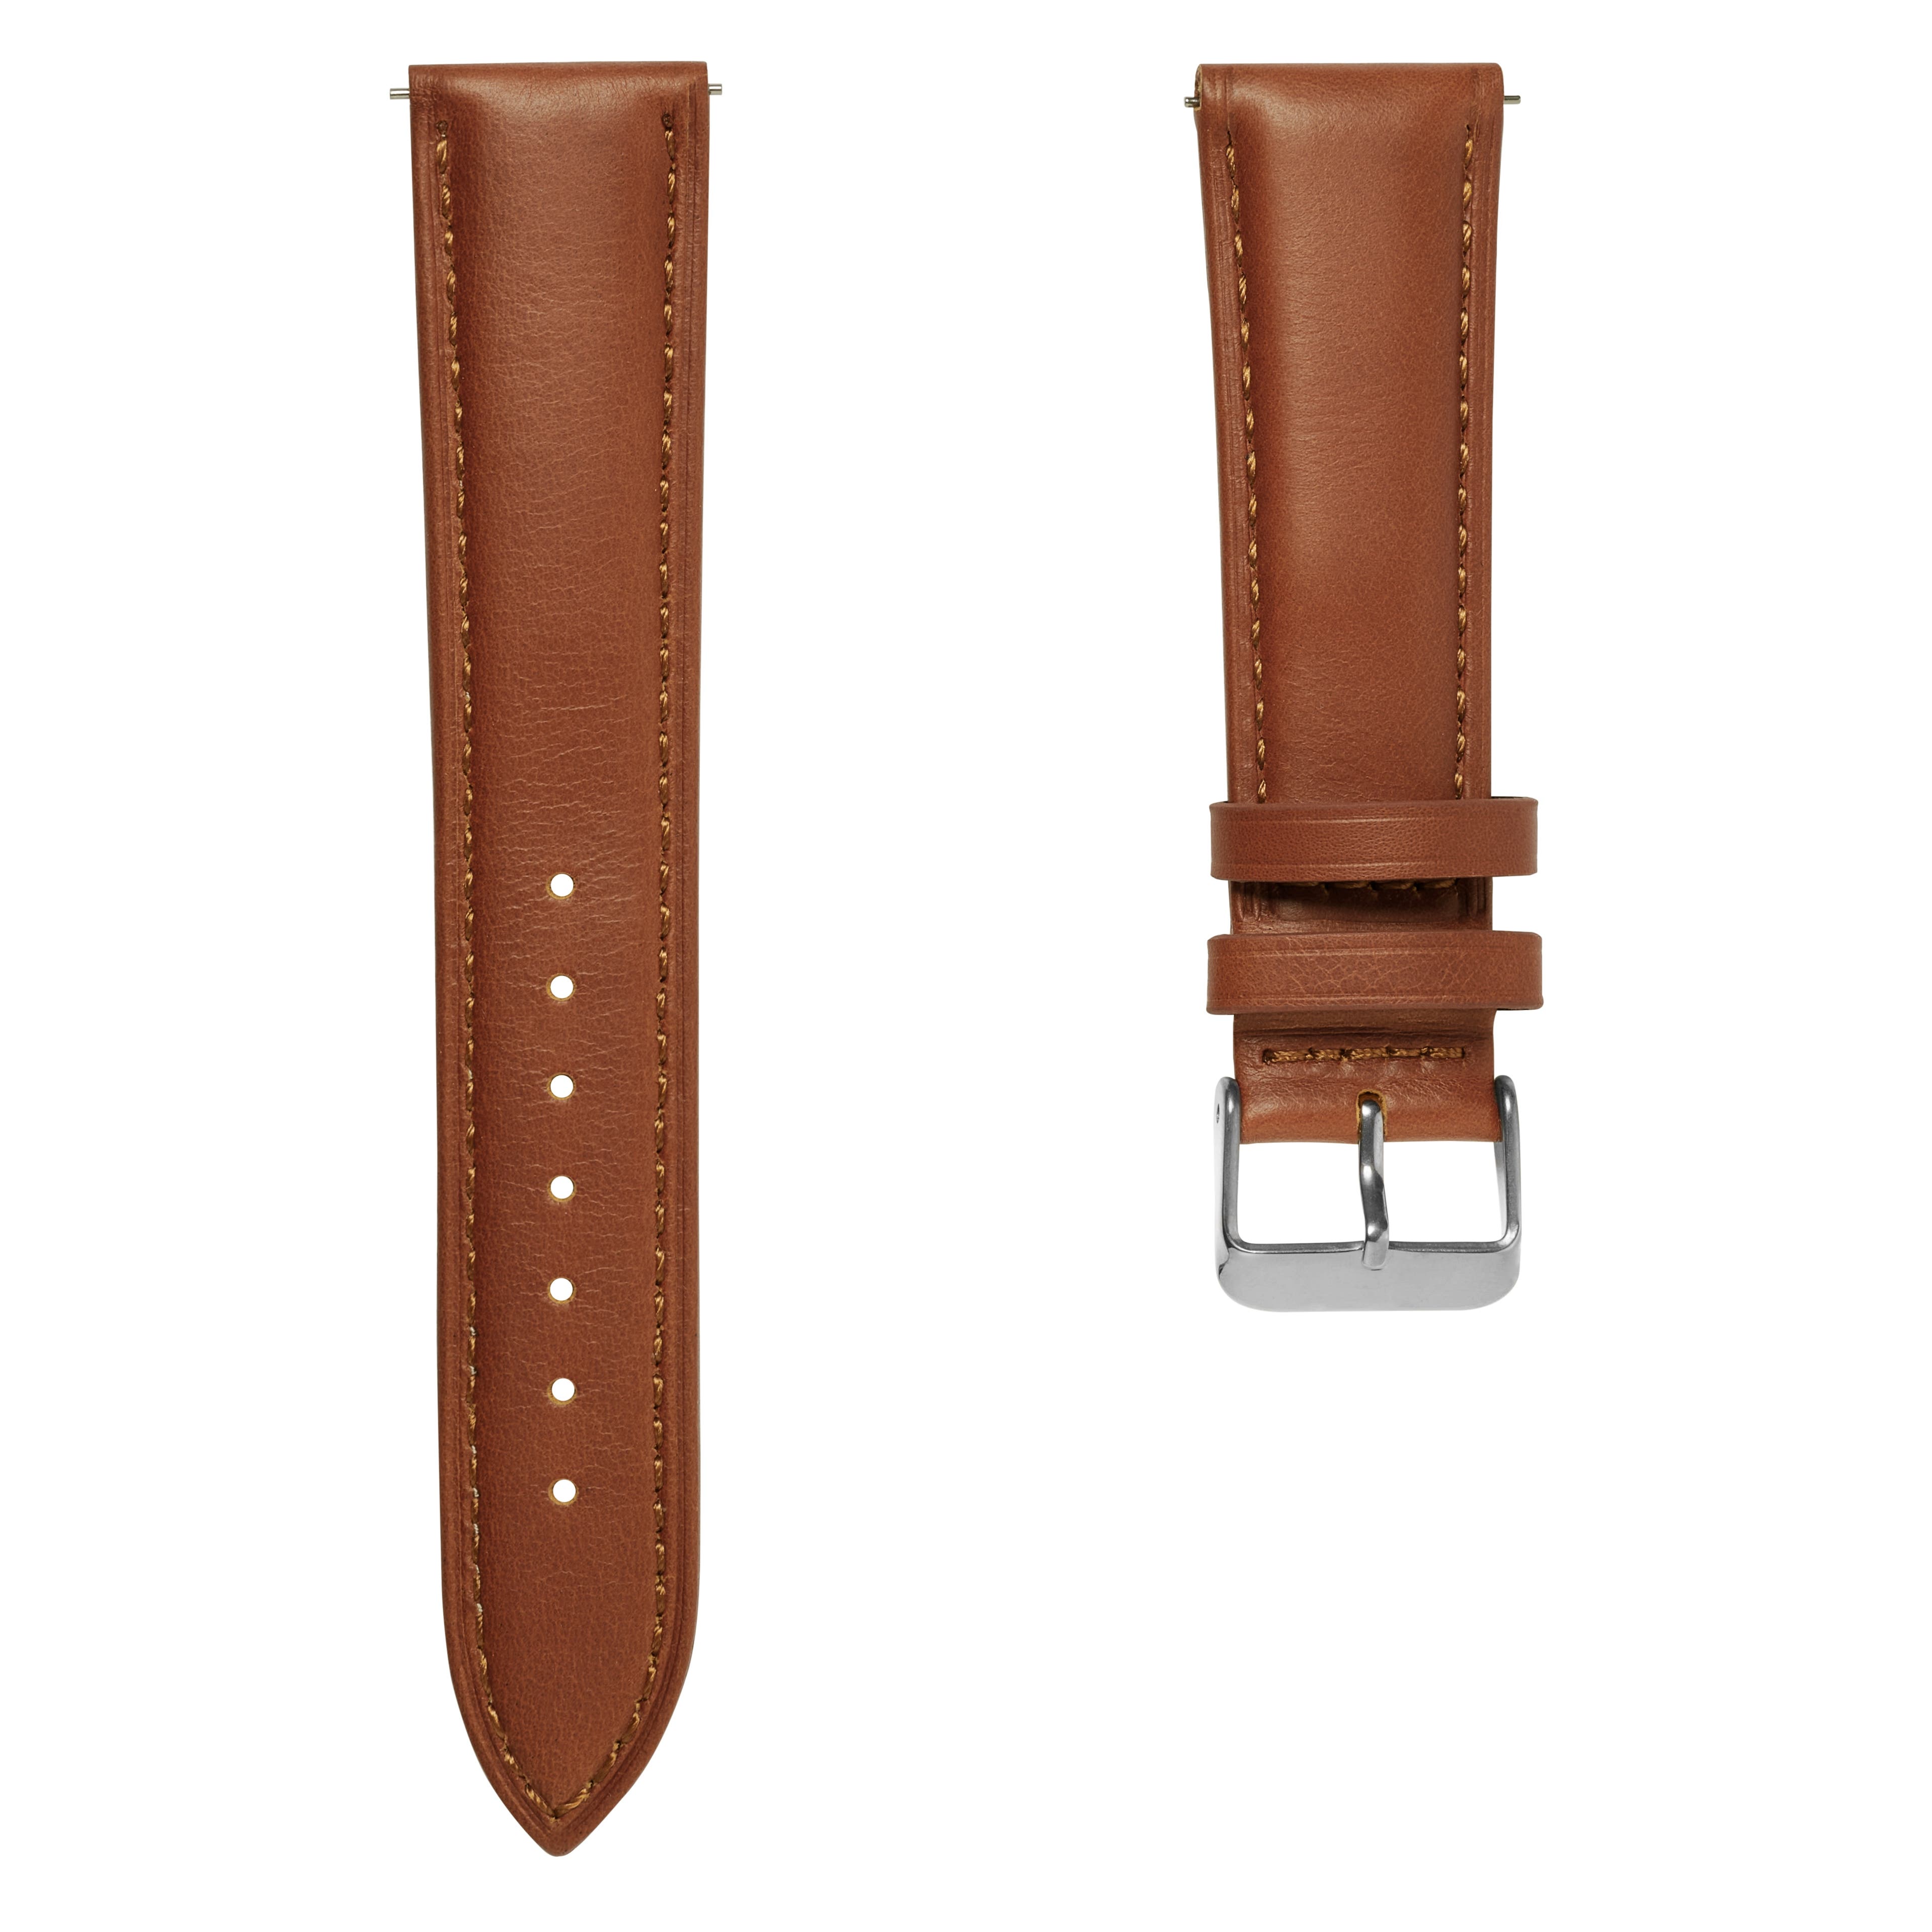 Bracelet de montre en cuir brun havane 21 mm avec boucle argentée - Système de fixation rapide